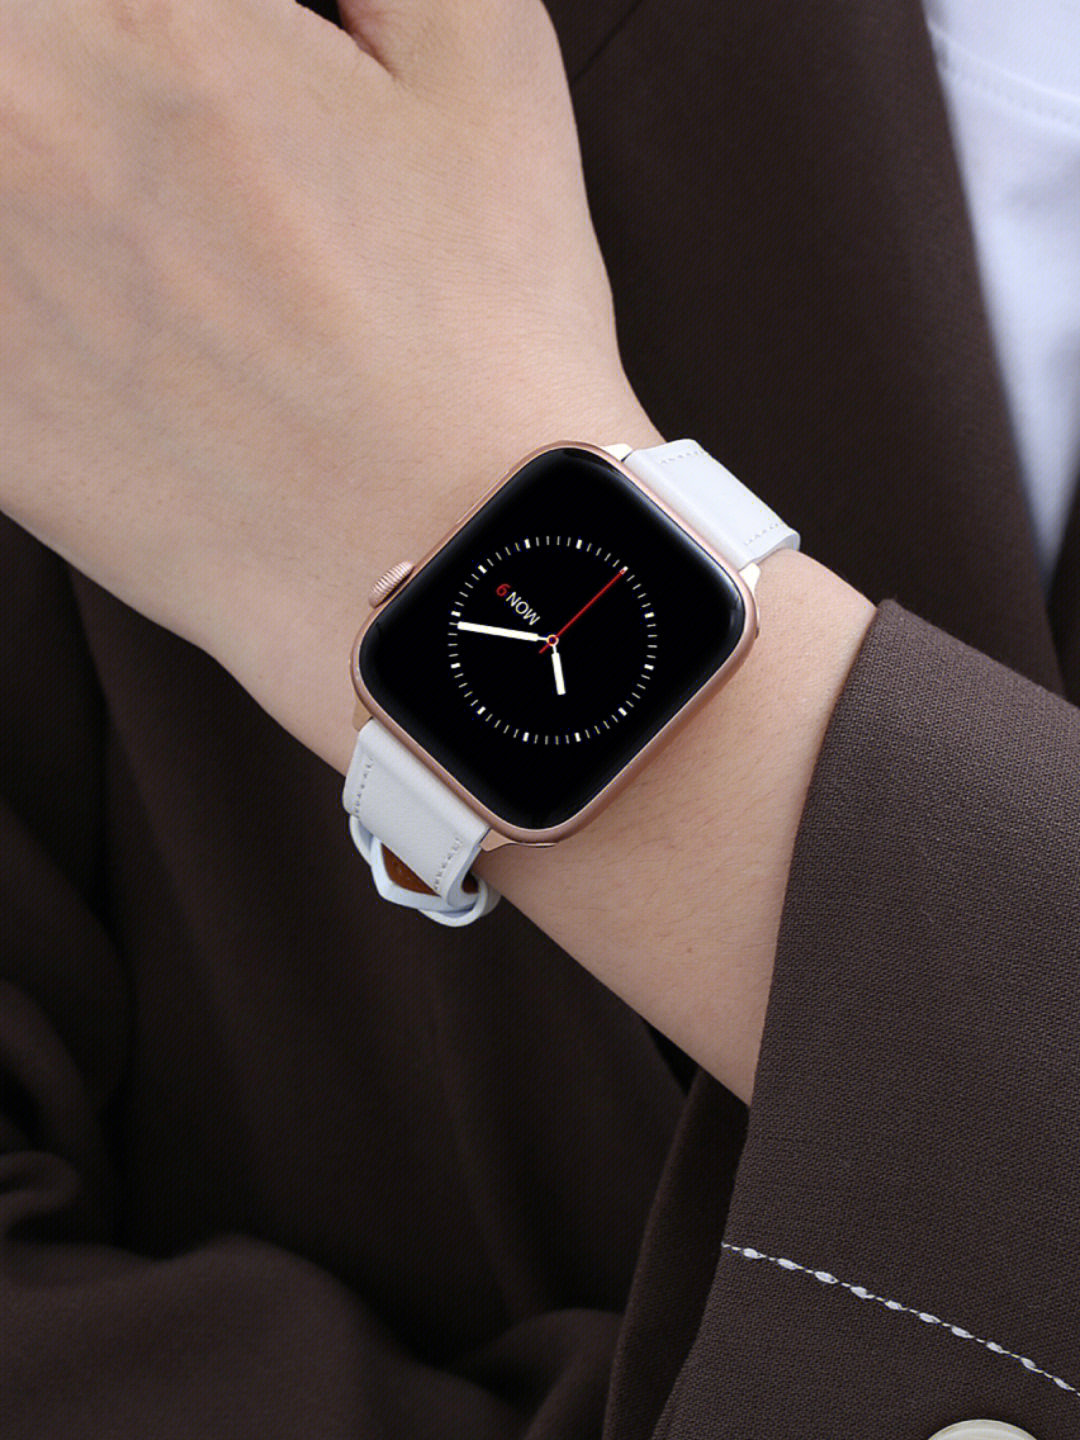 applewatch小白皮表带肉眼可见的精致感